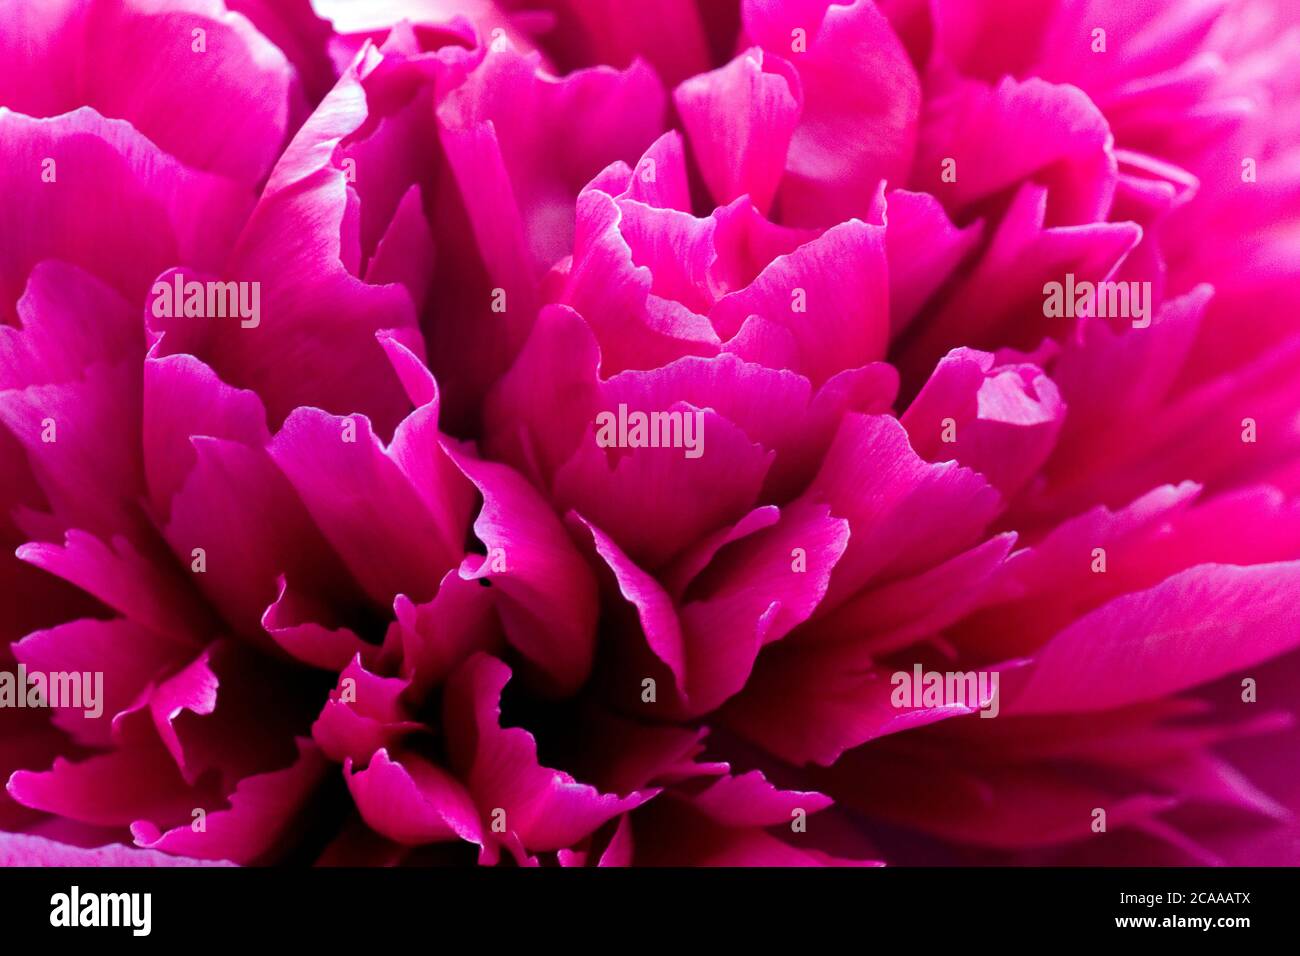 Detalle de primer plano de la flor de la peonía rosa (paeonia) Foto de stock